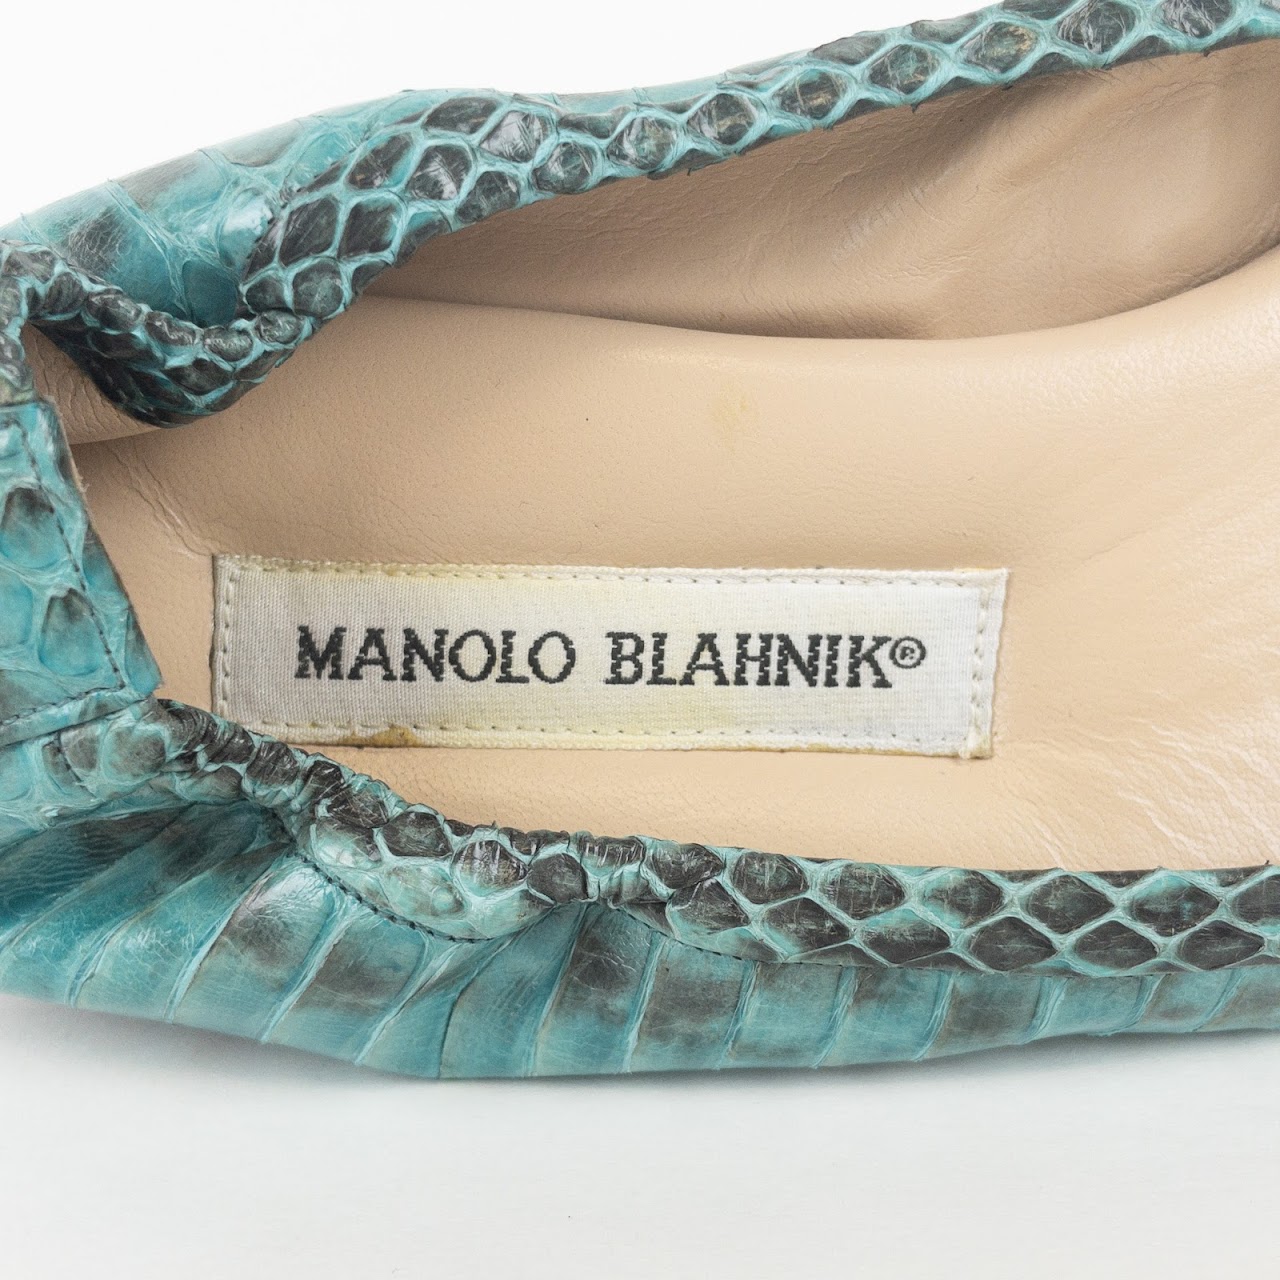 Manolo Blahnik Snakeskin Flats